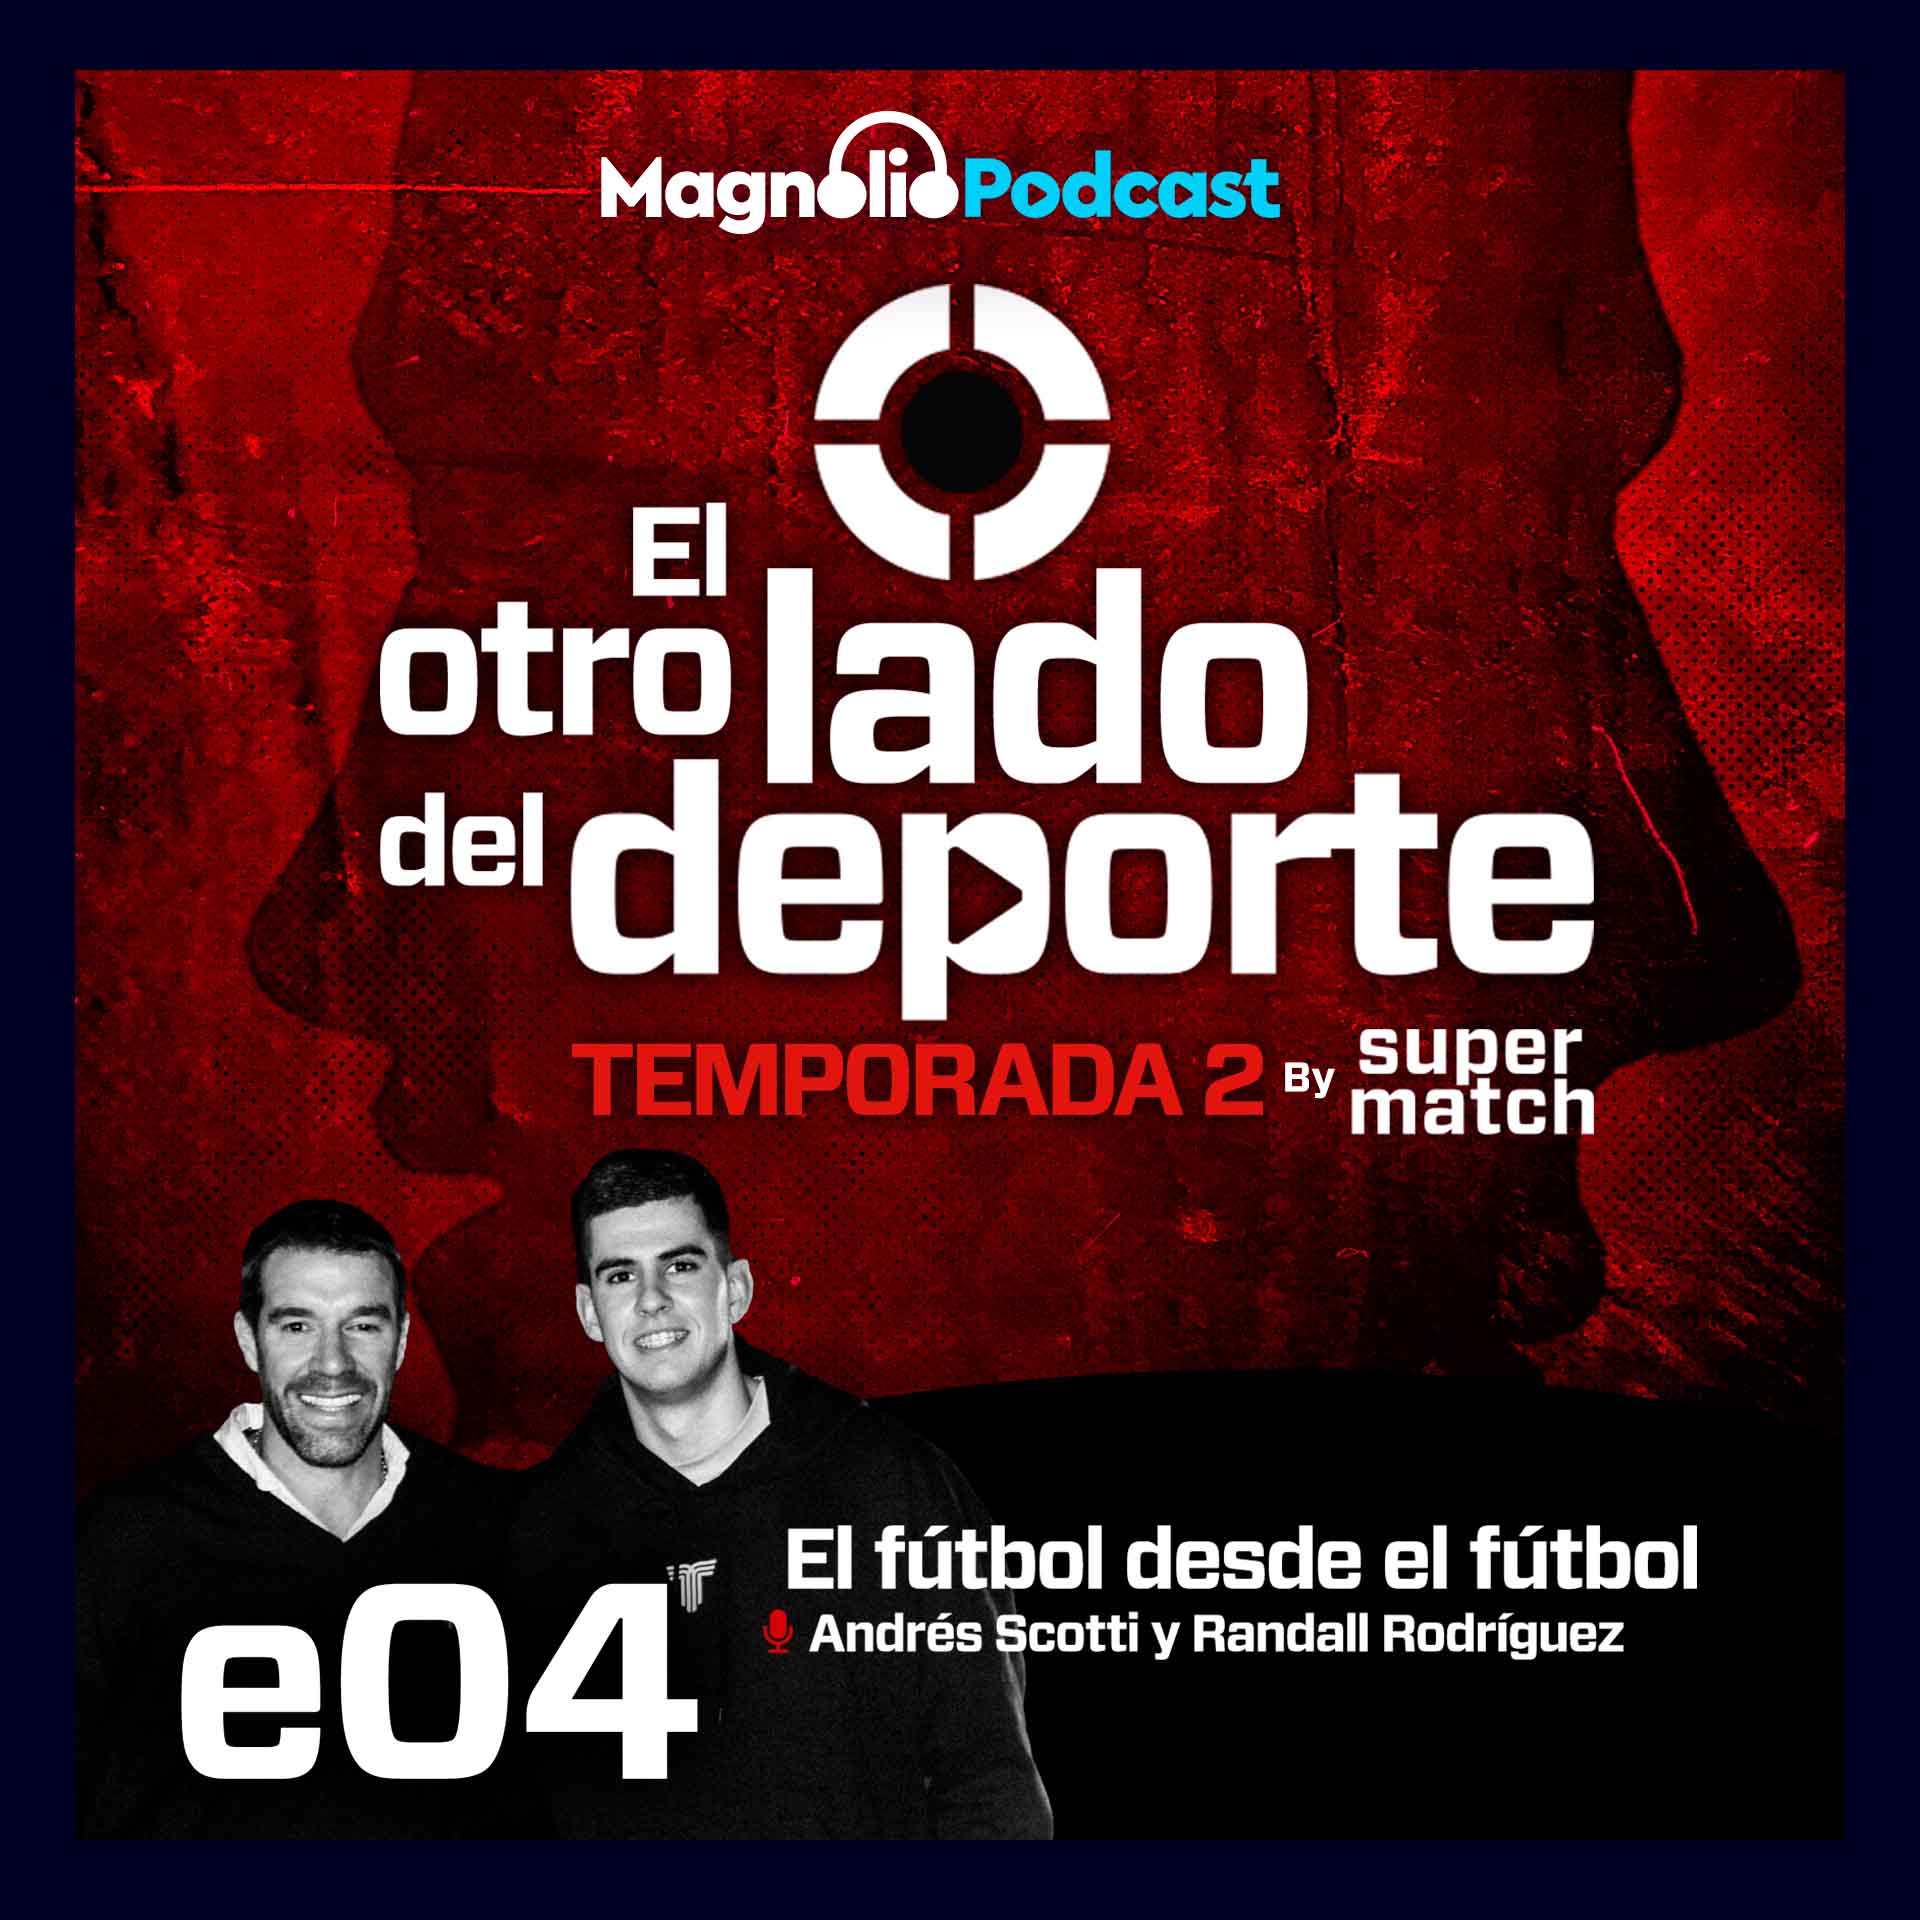 El fútbol desde el fútbol - Andrés Scotti y Randall Rodríguez